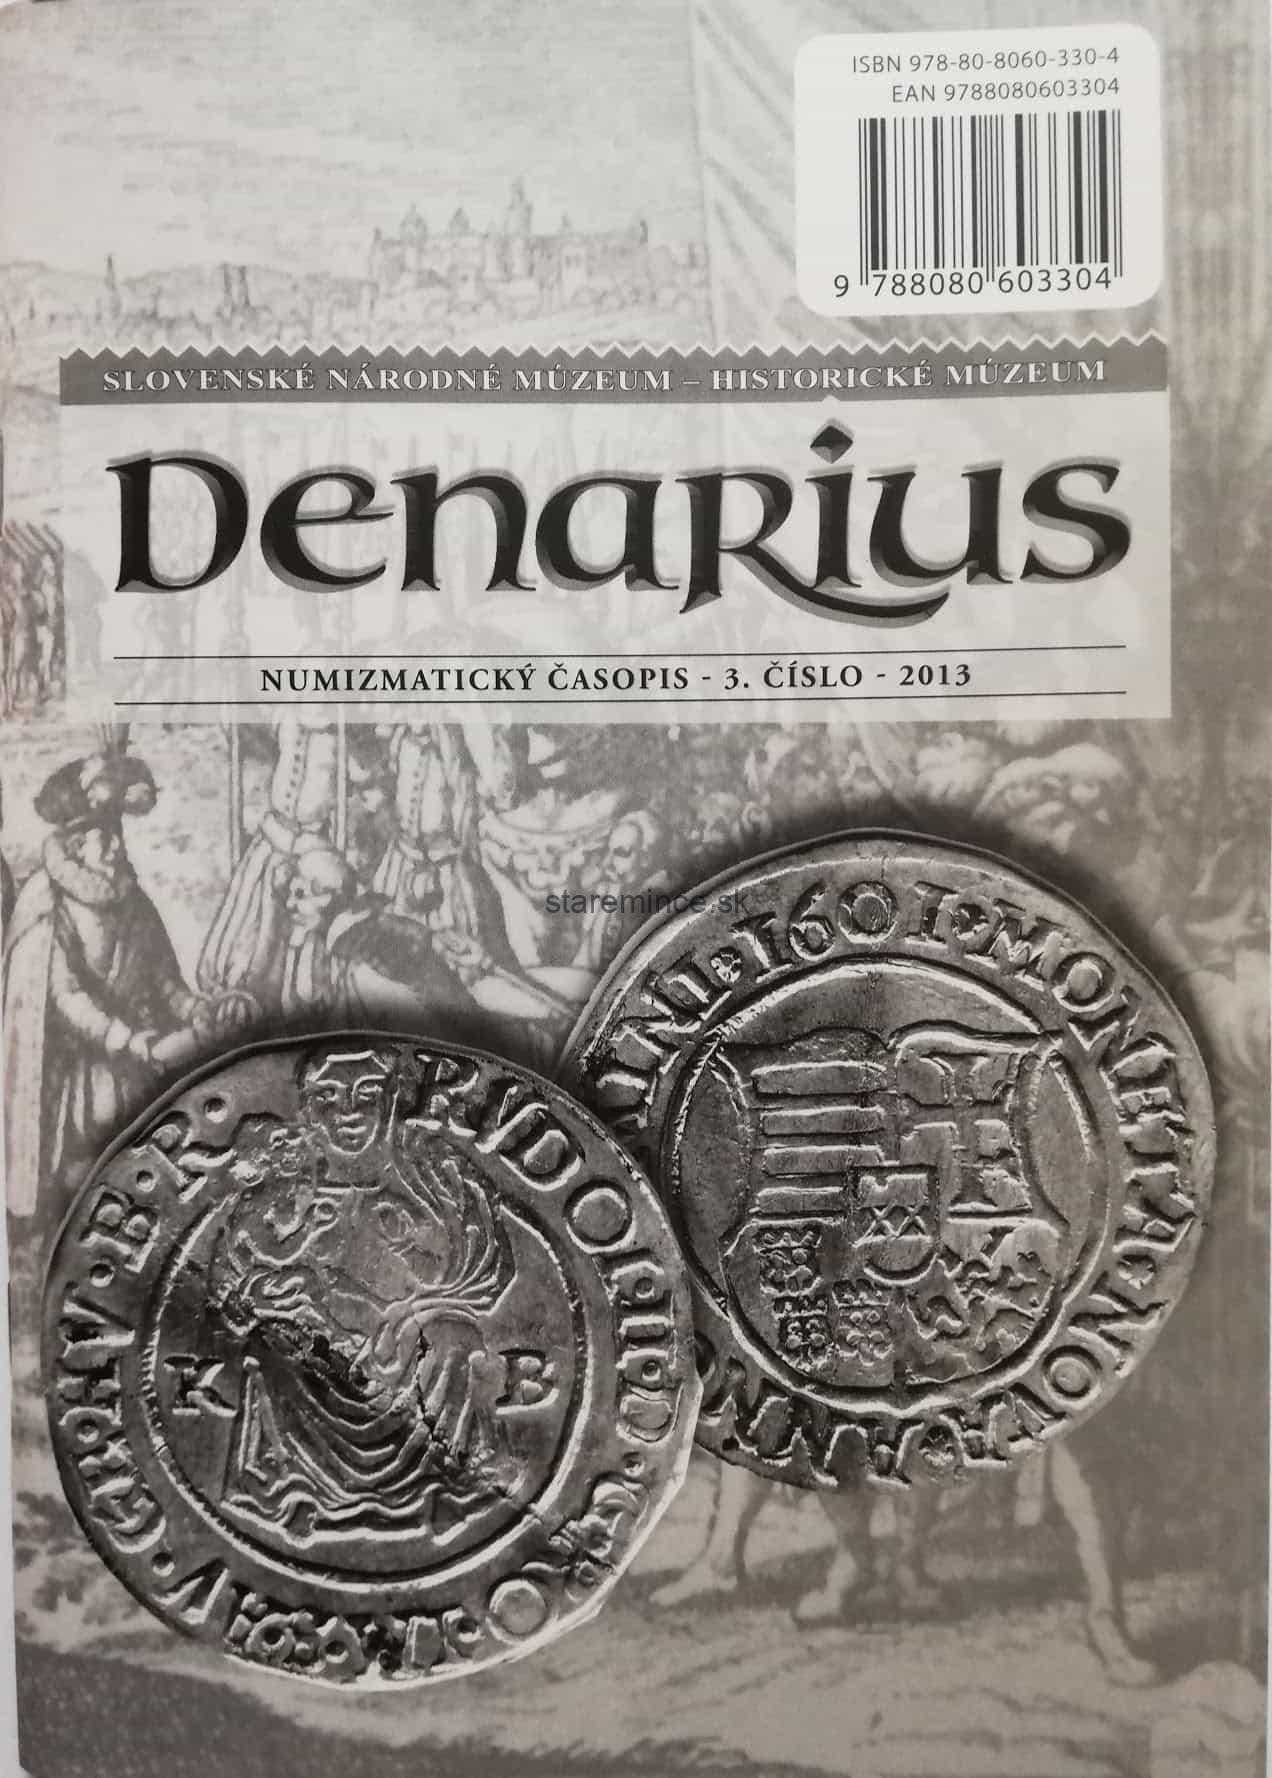 Denarius Numizmatický časopis  3. číslo